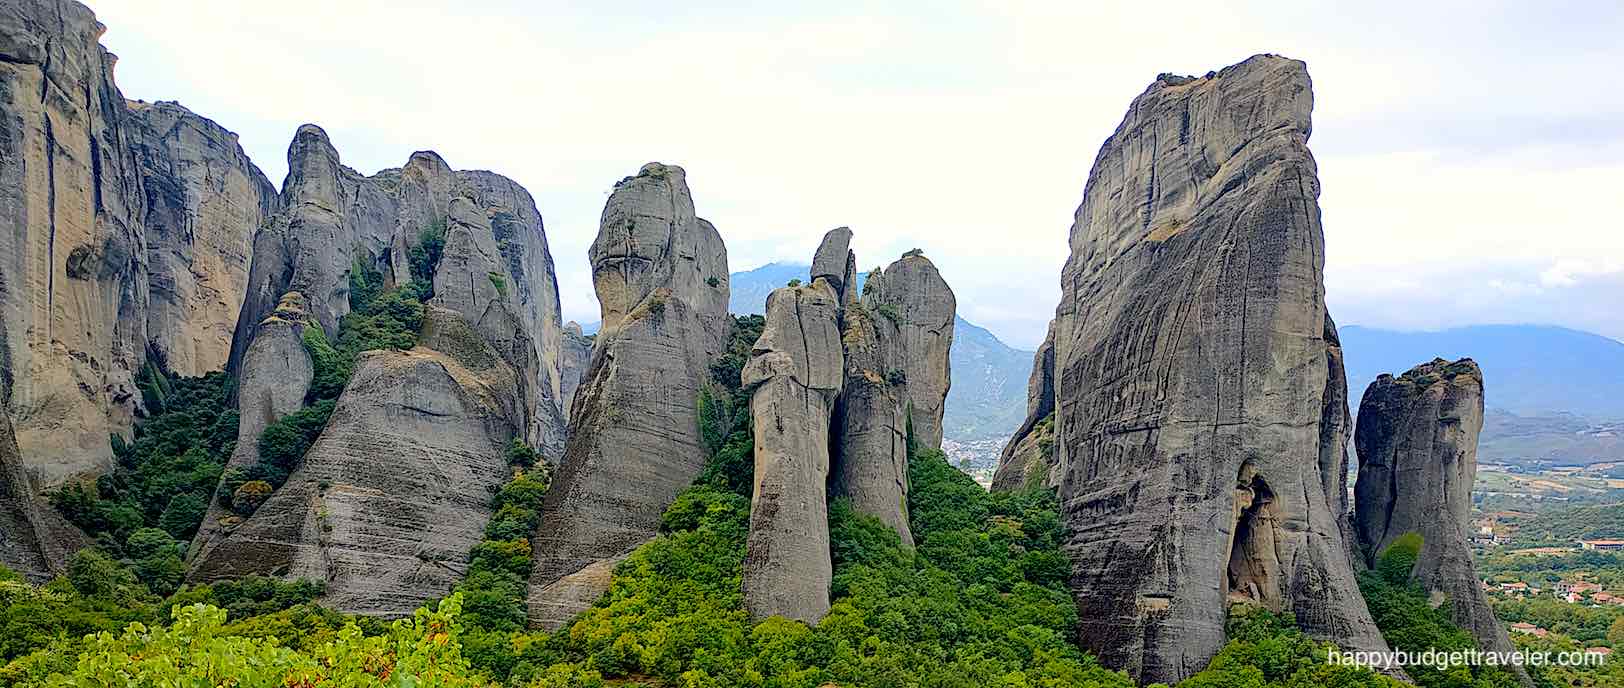 Picture of Natural rock pillars in Meteora, Kalabaka, Greece